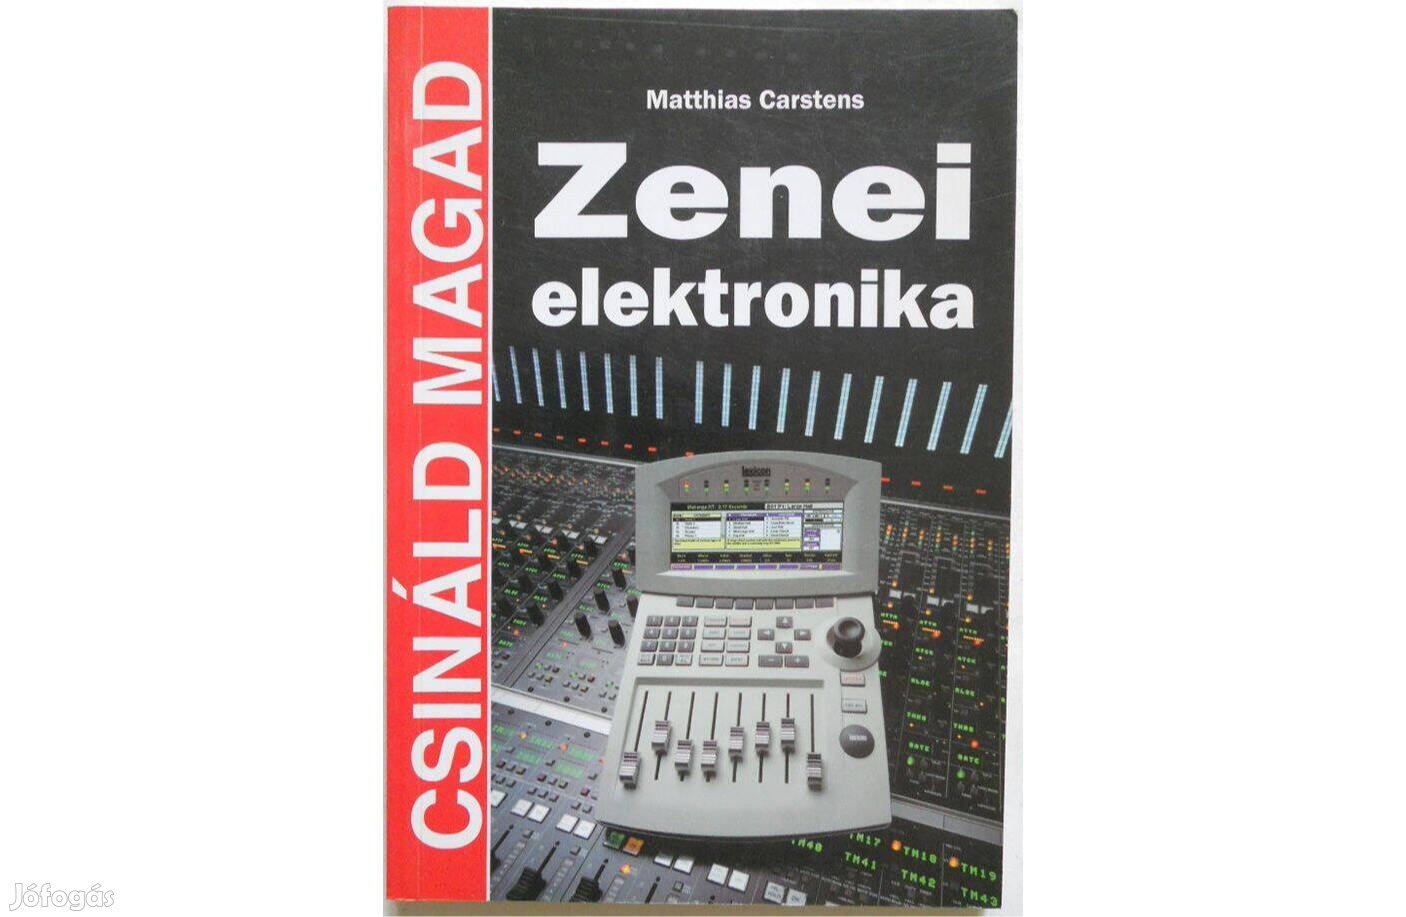 Matthias Carstens - Zenei elektronika könyv